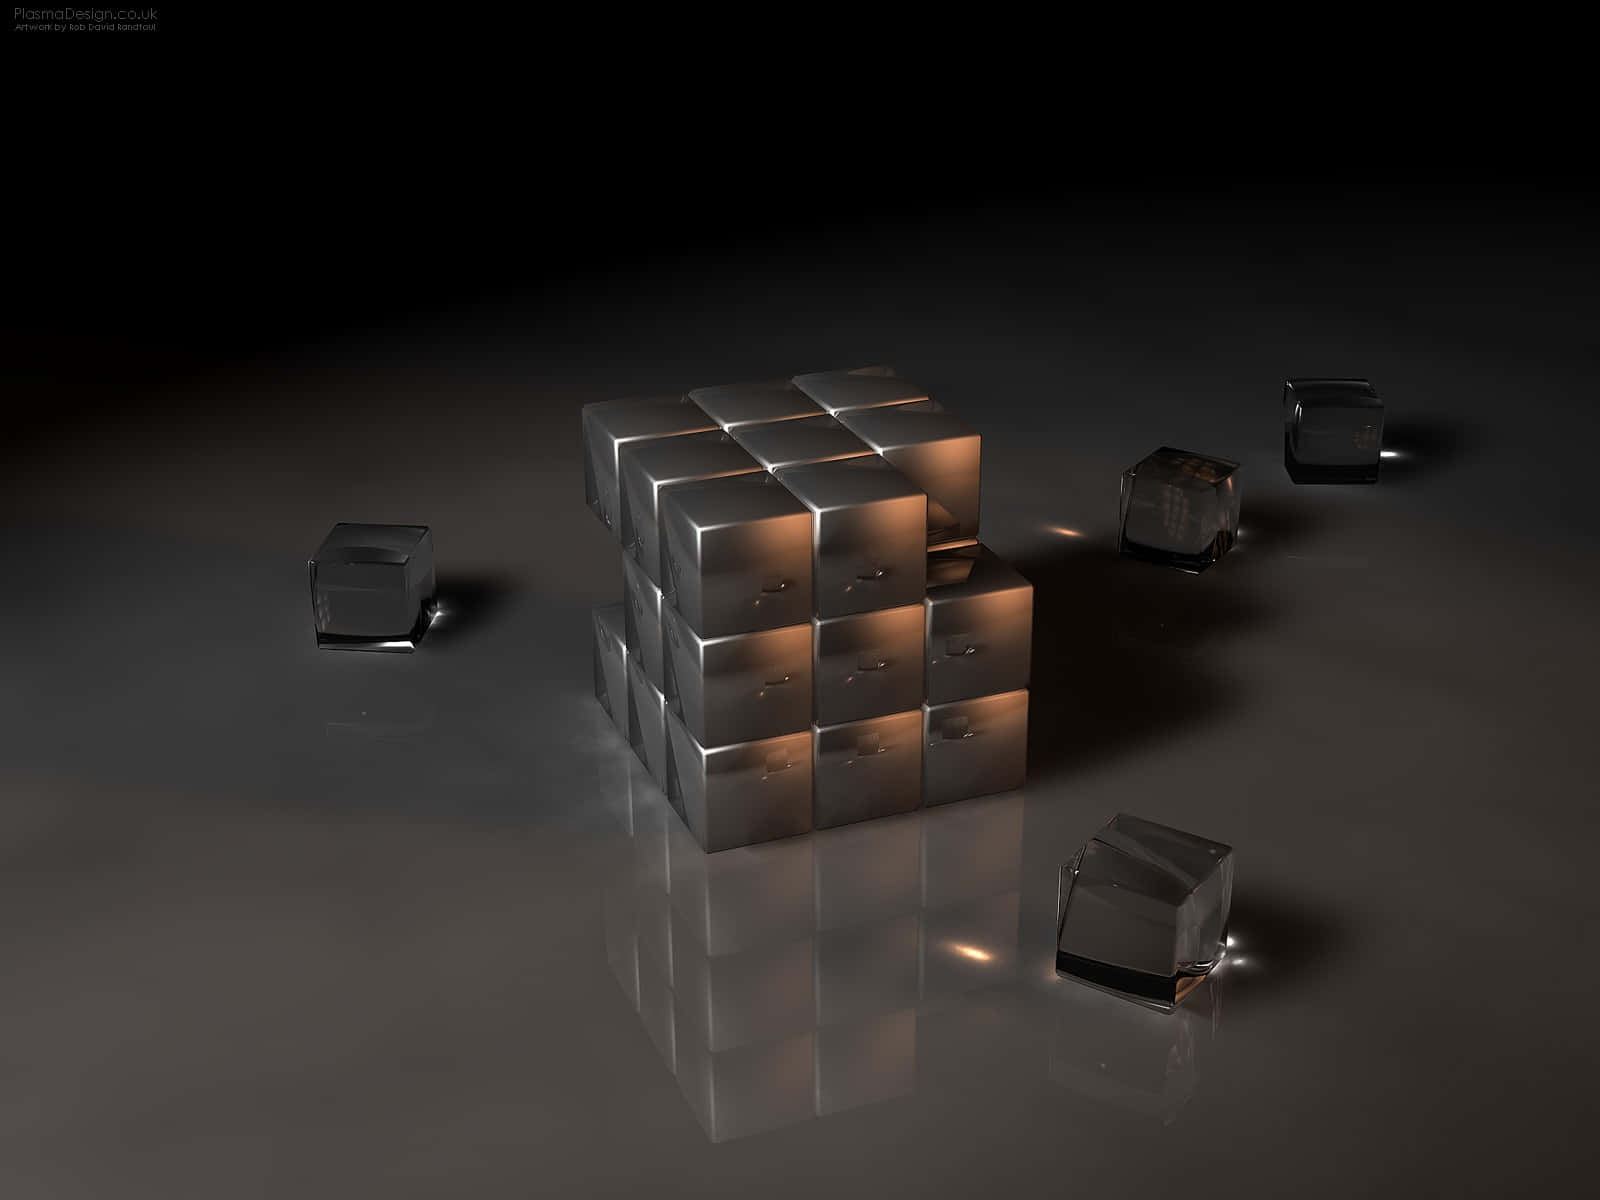 3dkonstbilder På Interfacelift Med Rubiks Kub Som Motiv.